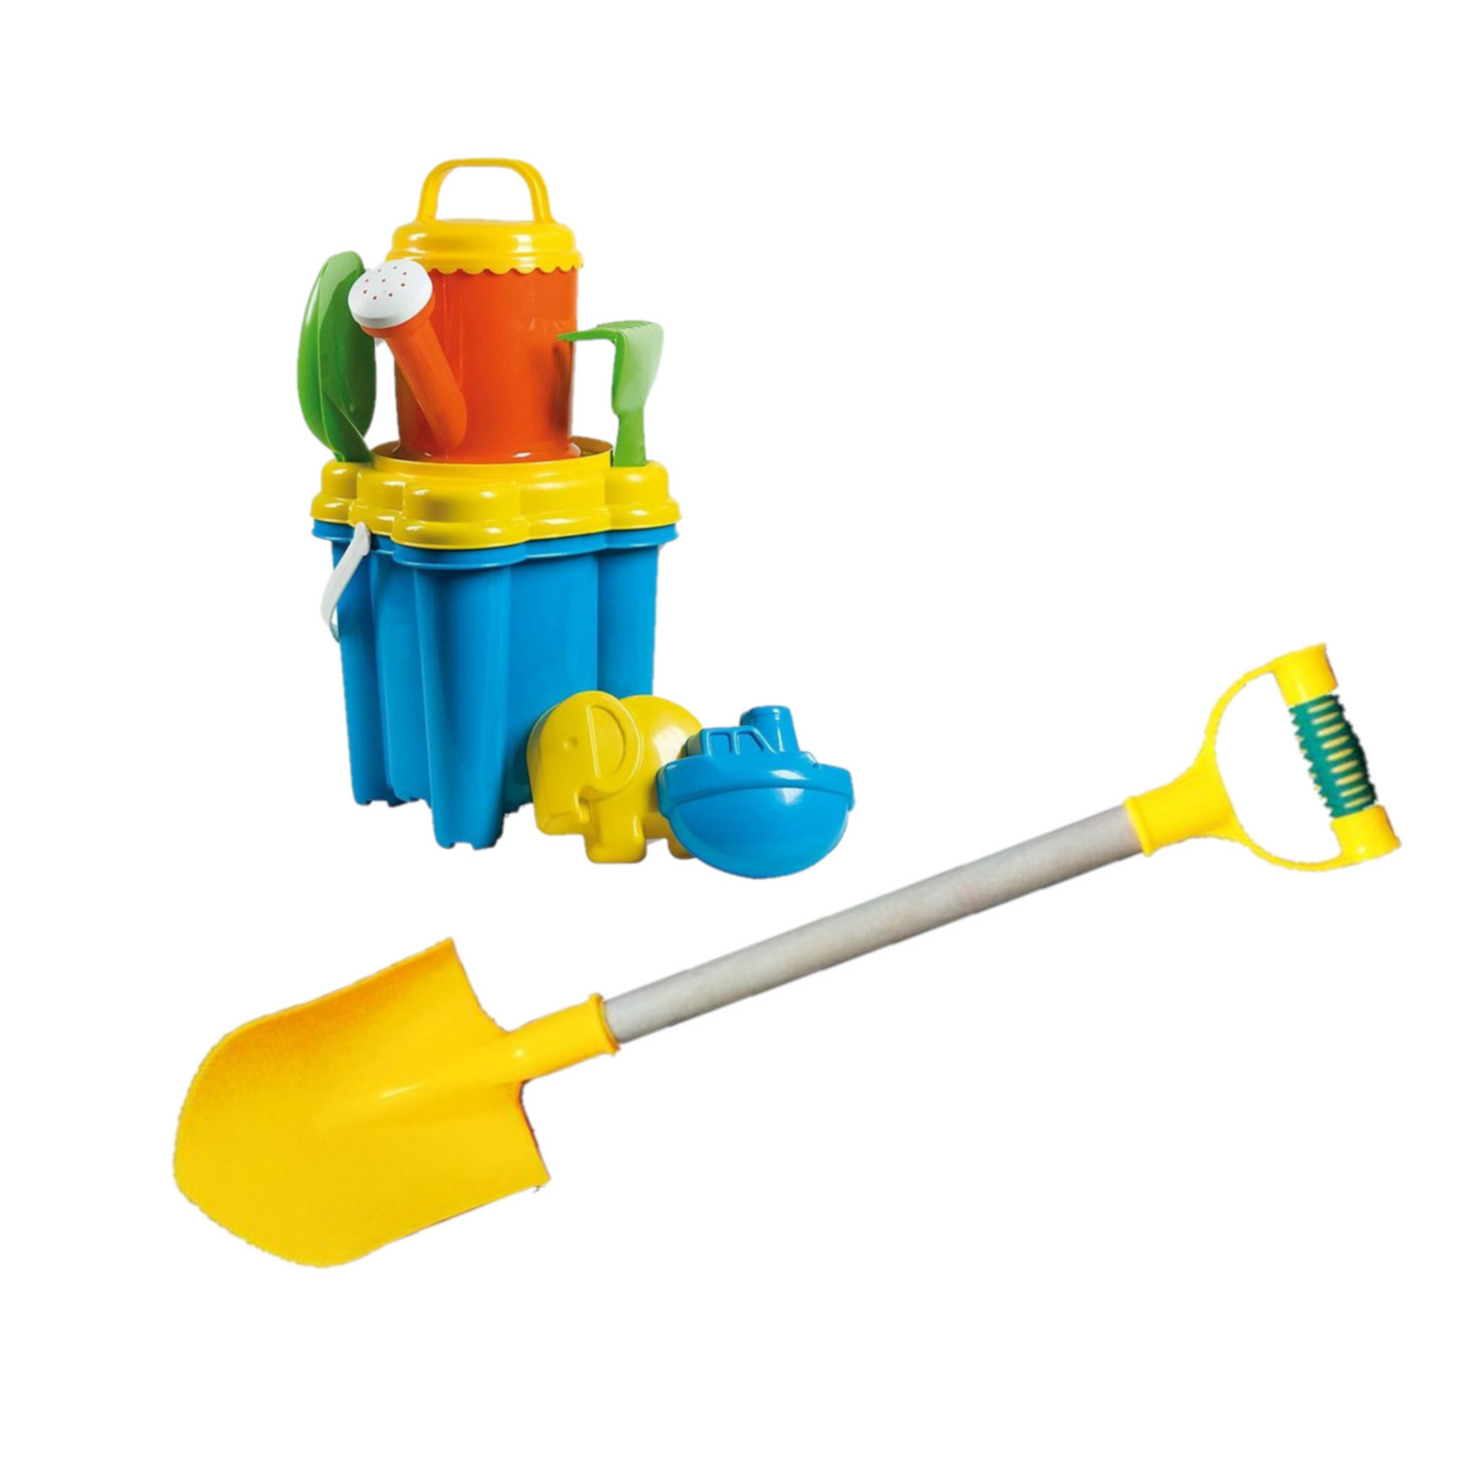 Strand-zandbak speelgoed emmer met vormpjes en kleine schepjes + grote zandschep van 55 cm